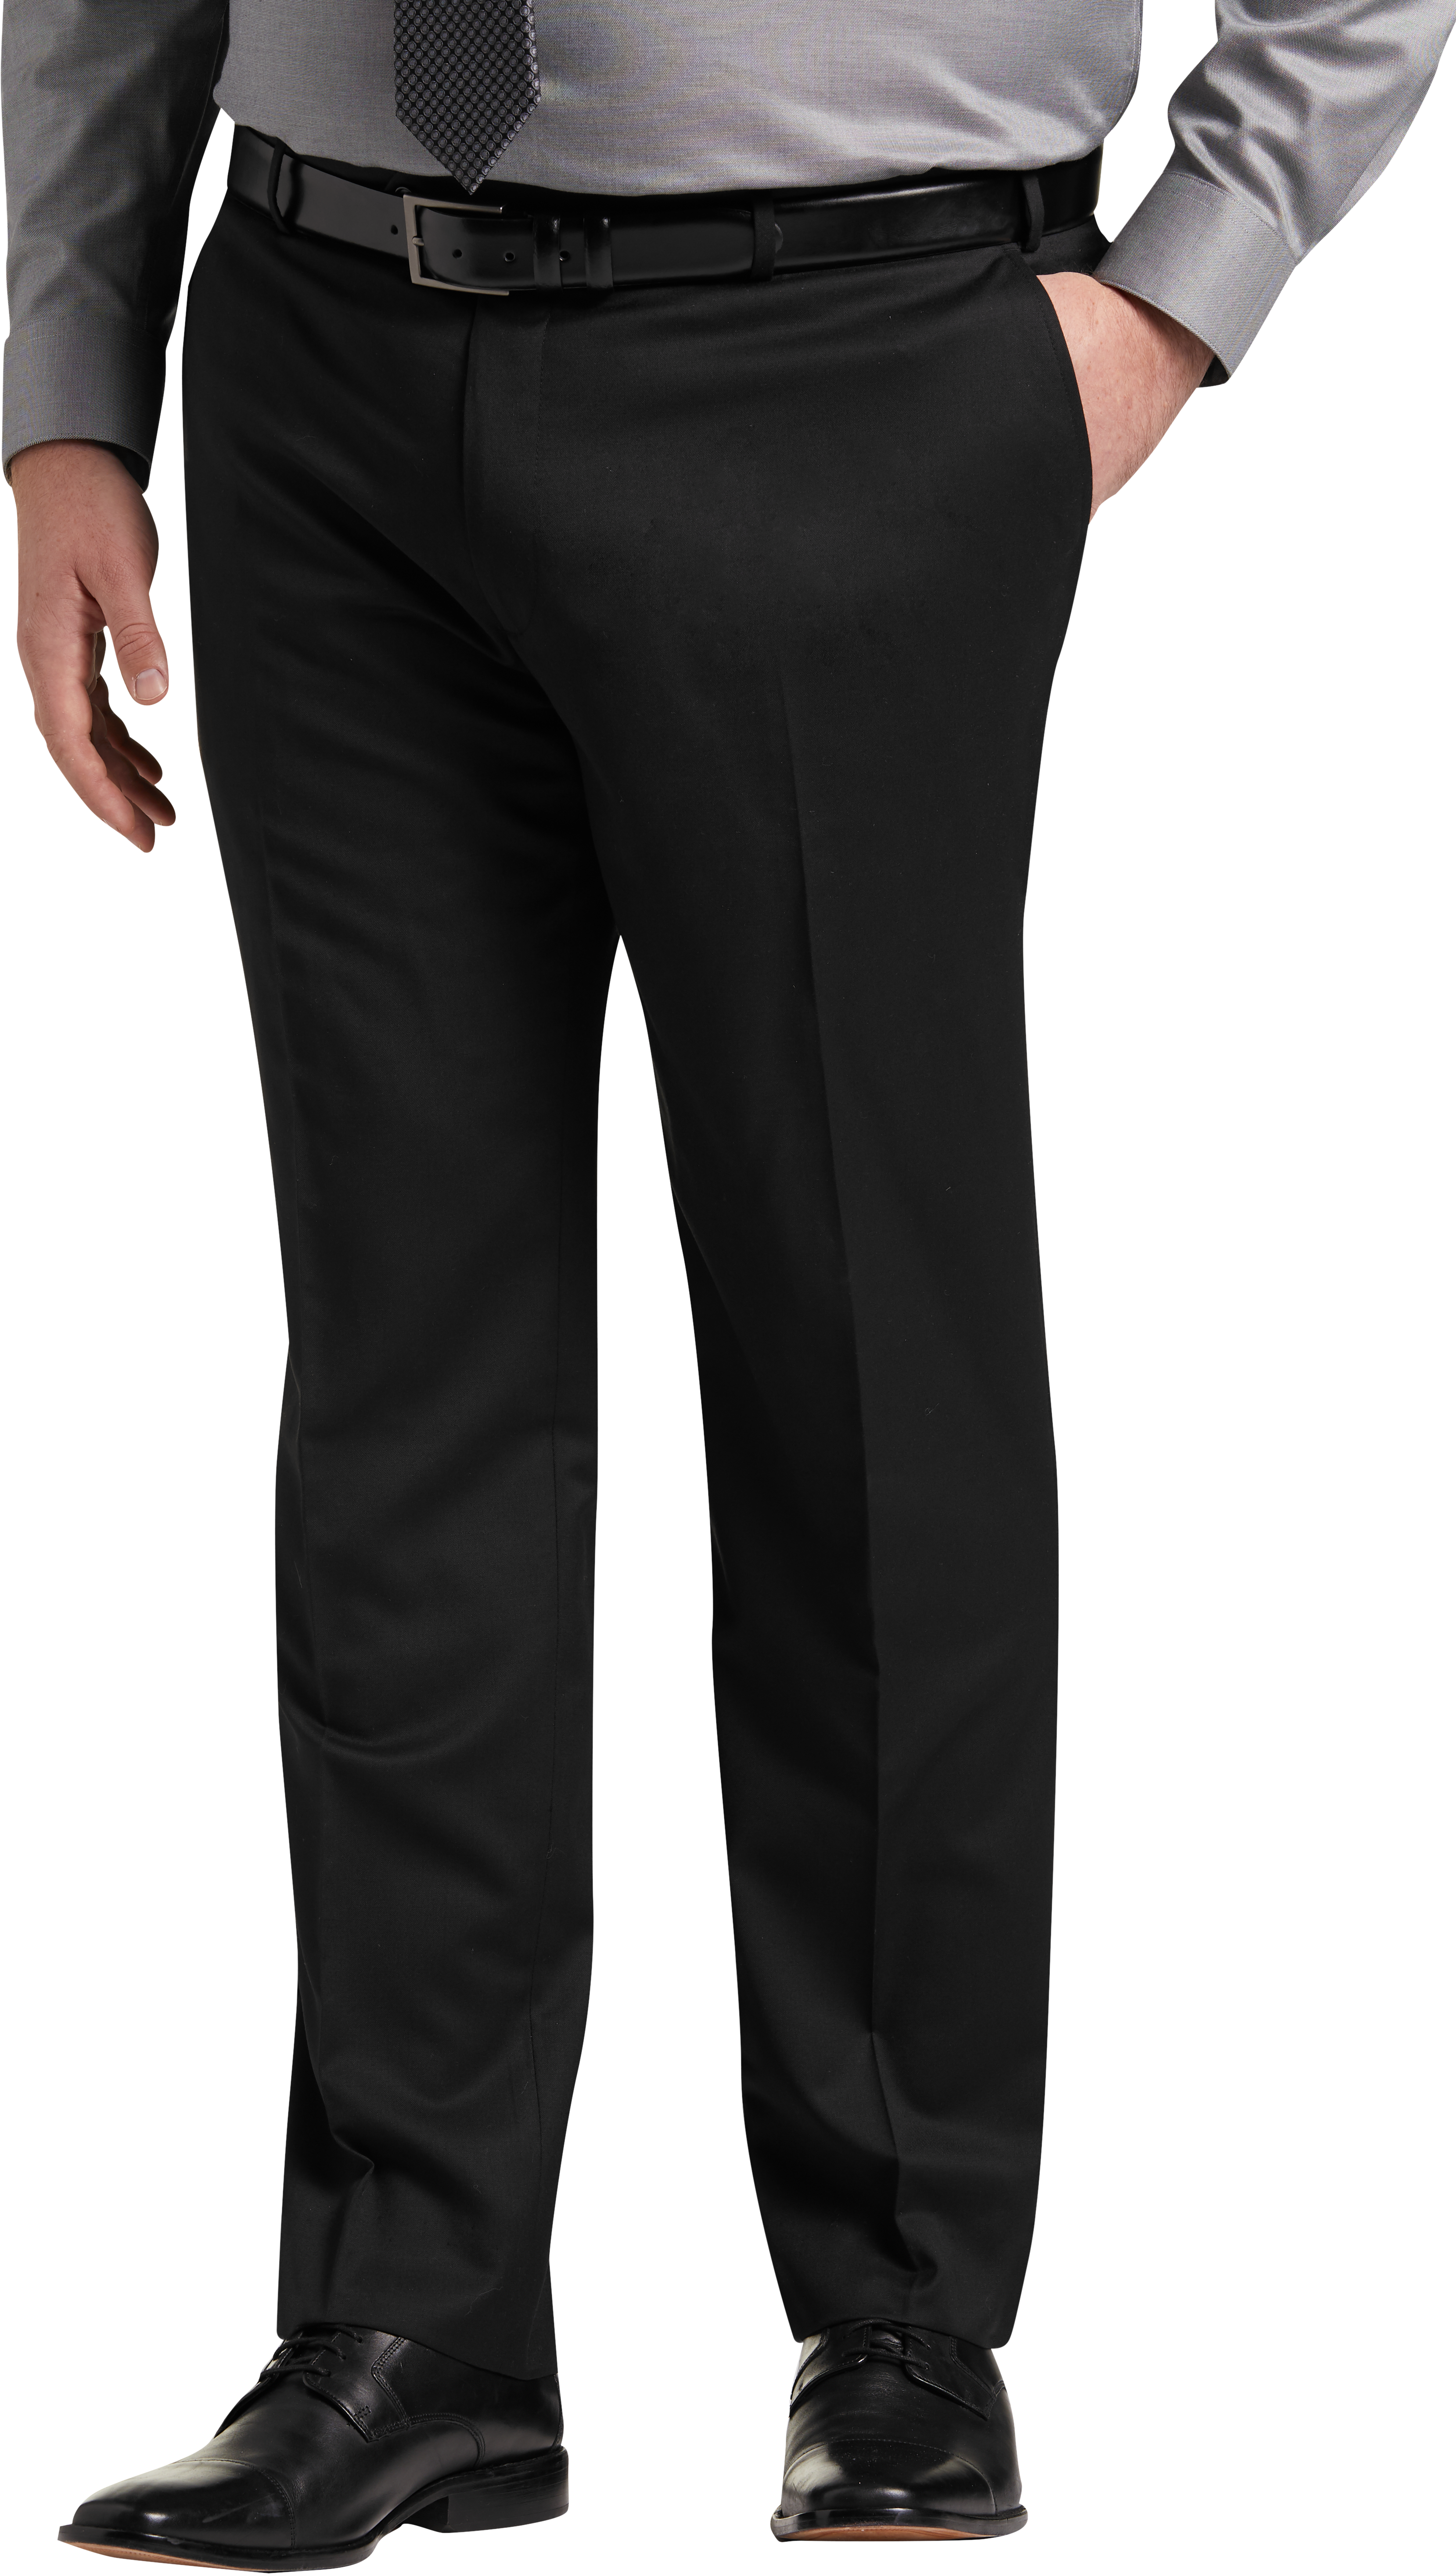 JOE Joseph Abboud Black Suit Separate Pant, Executive Fit - Men's Suits ...